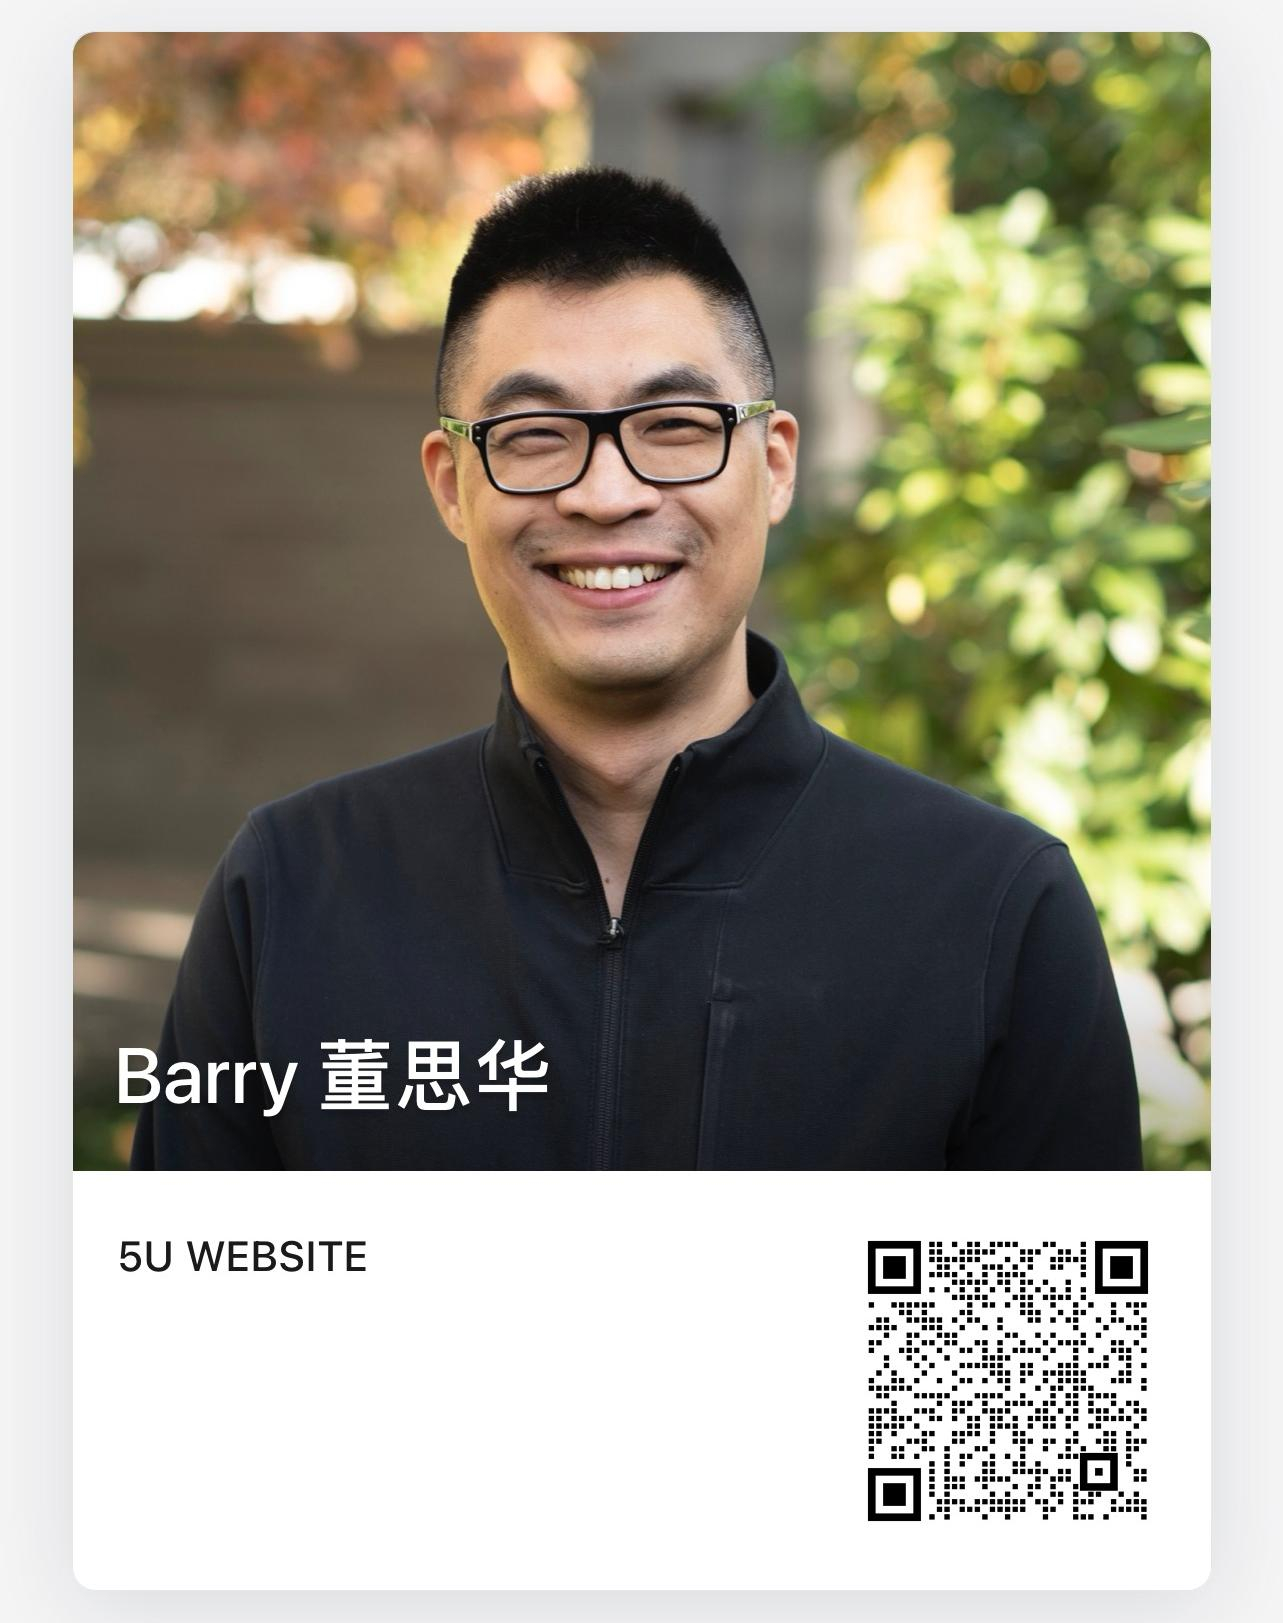 Barry Dong WeCom 5U Website